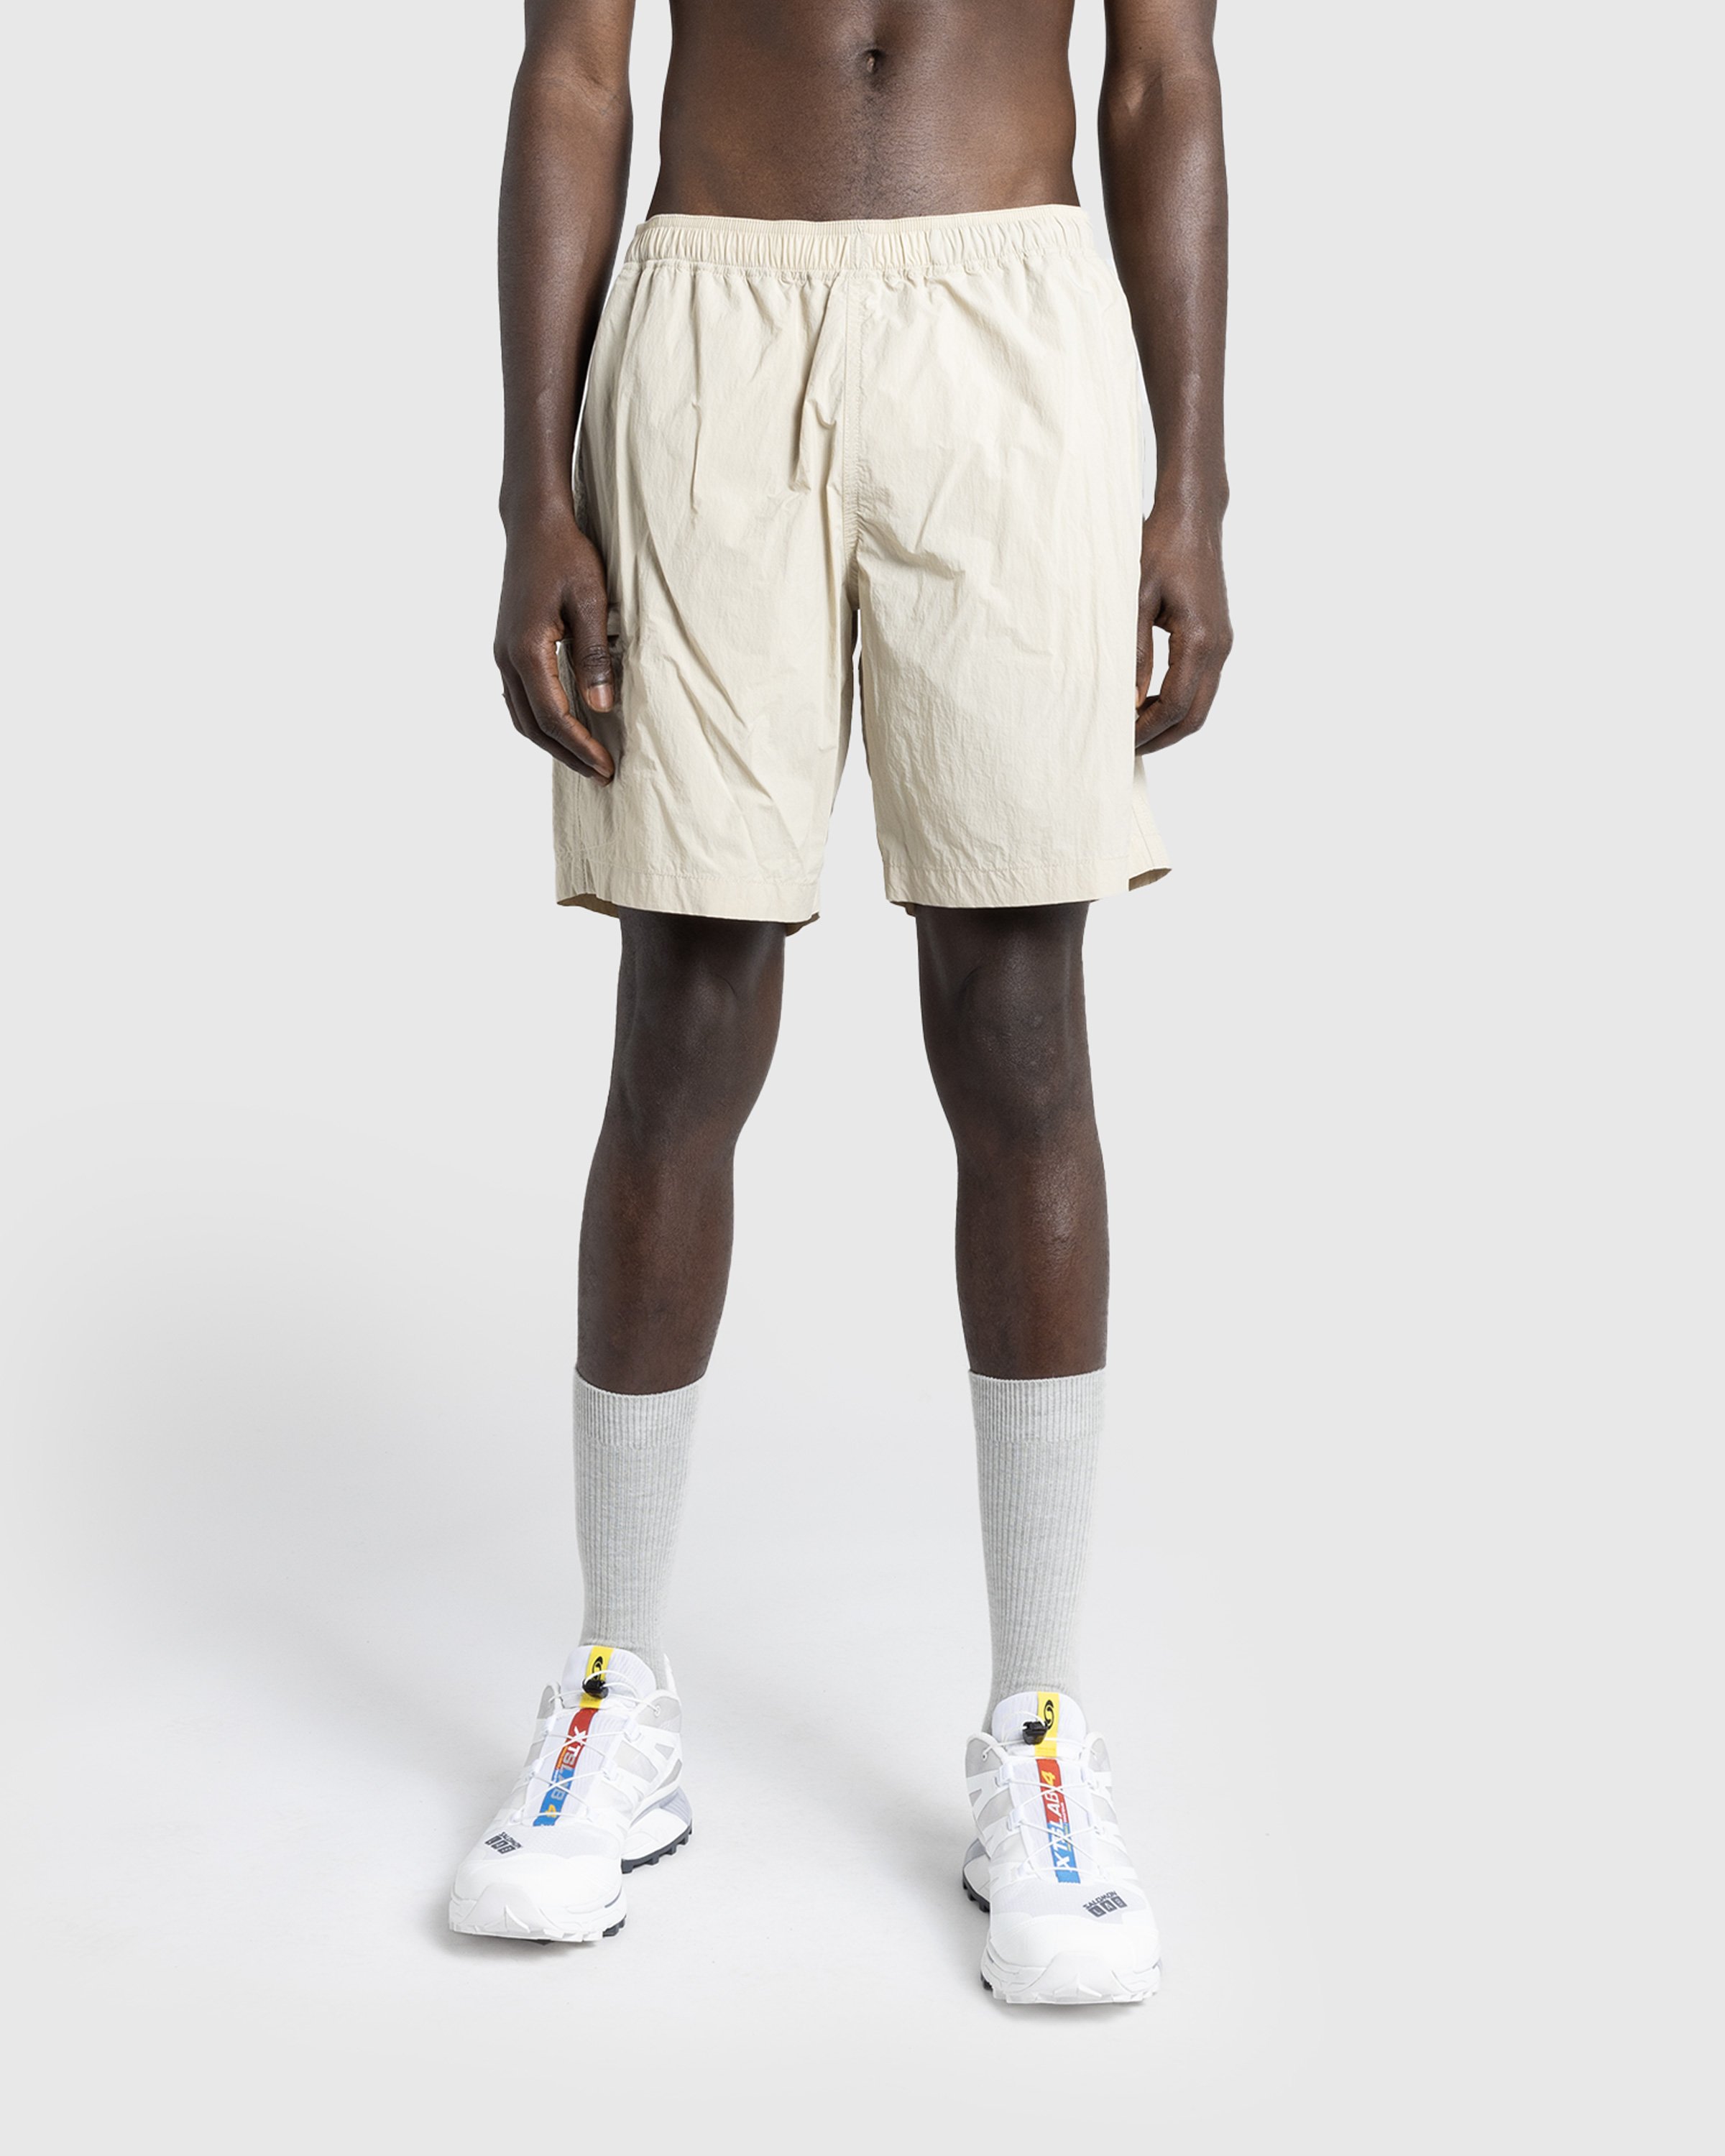 Highsnobiety HS05 - Natural Dyed Nylon Shorts Beige - Clothing - Beige - Image 3